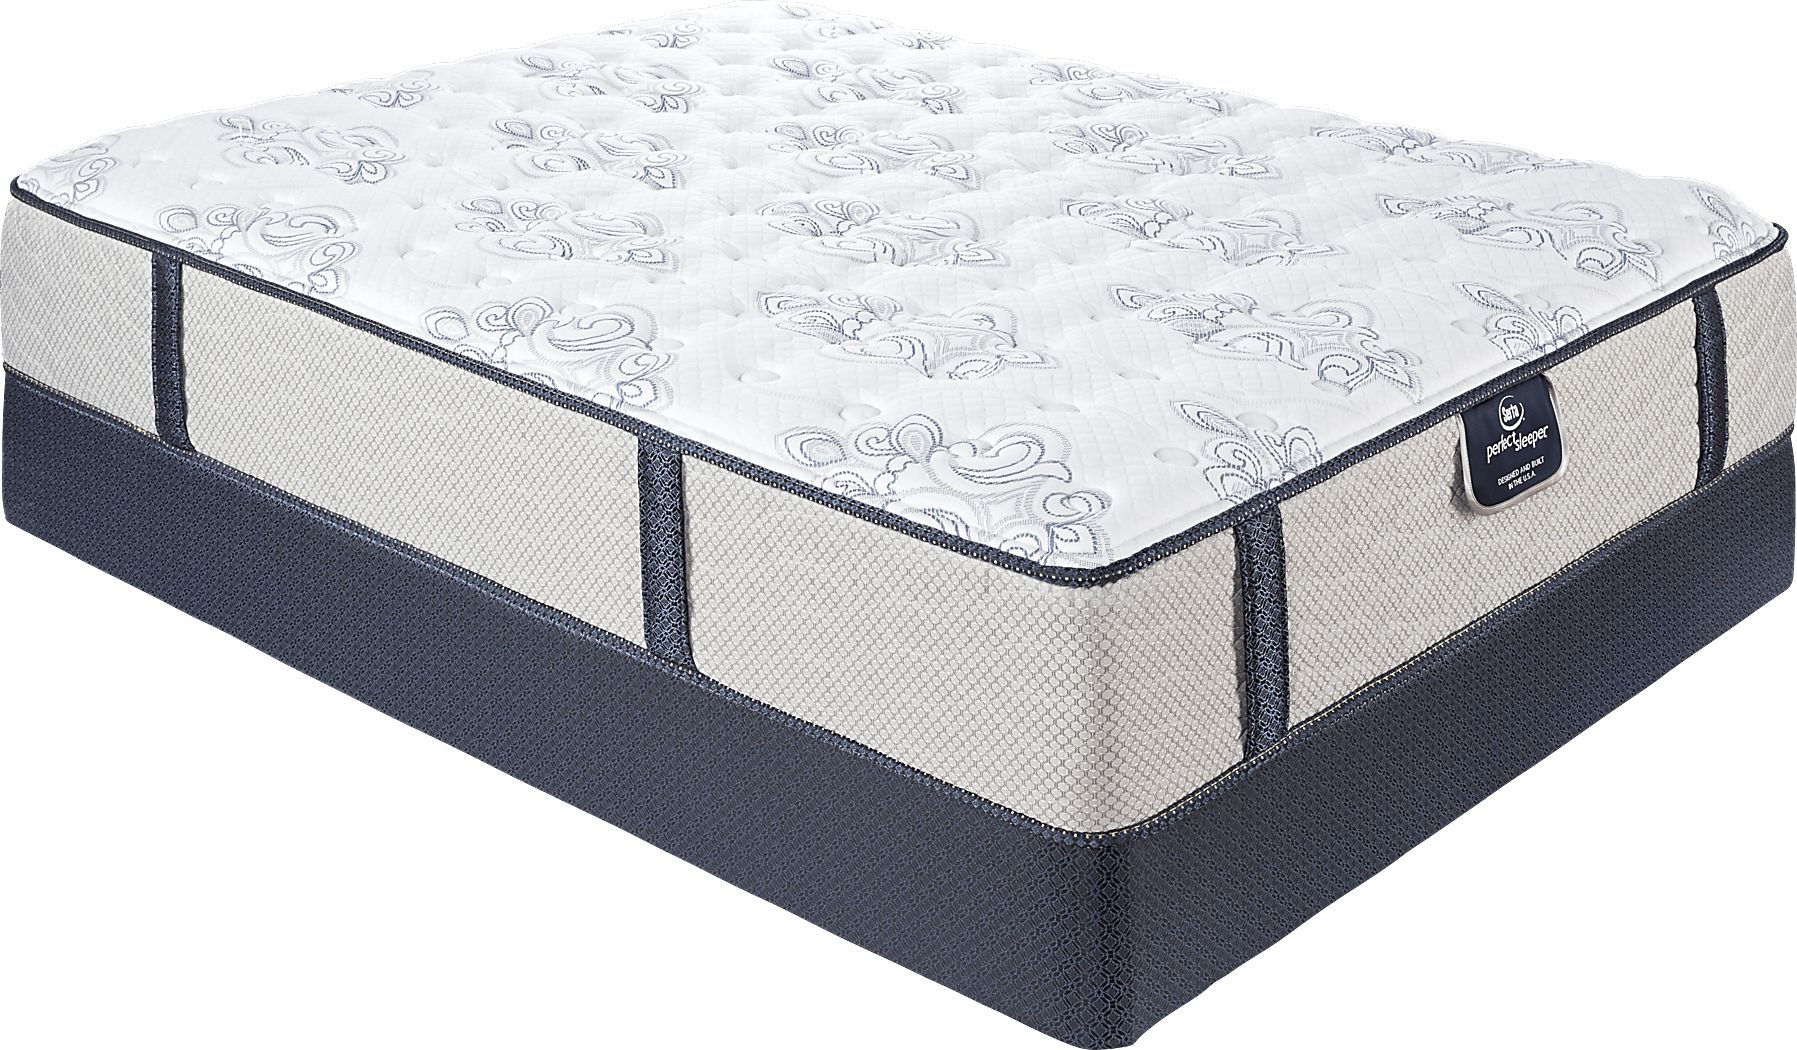 serta perfect sleeper plush queen mattress set